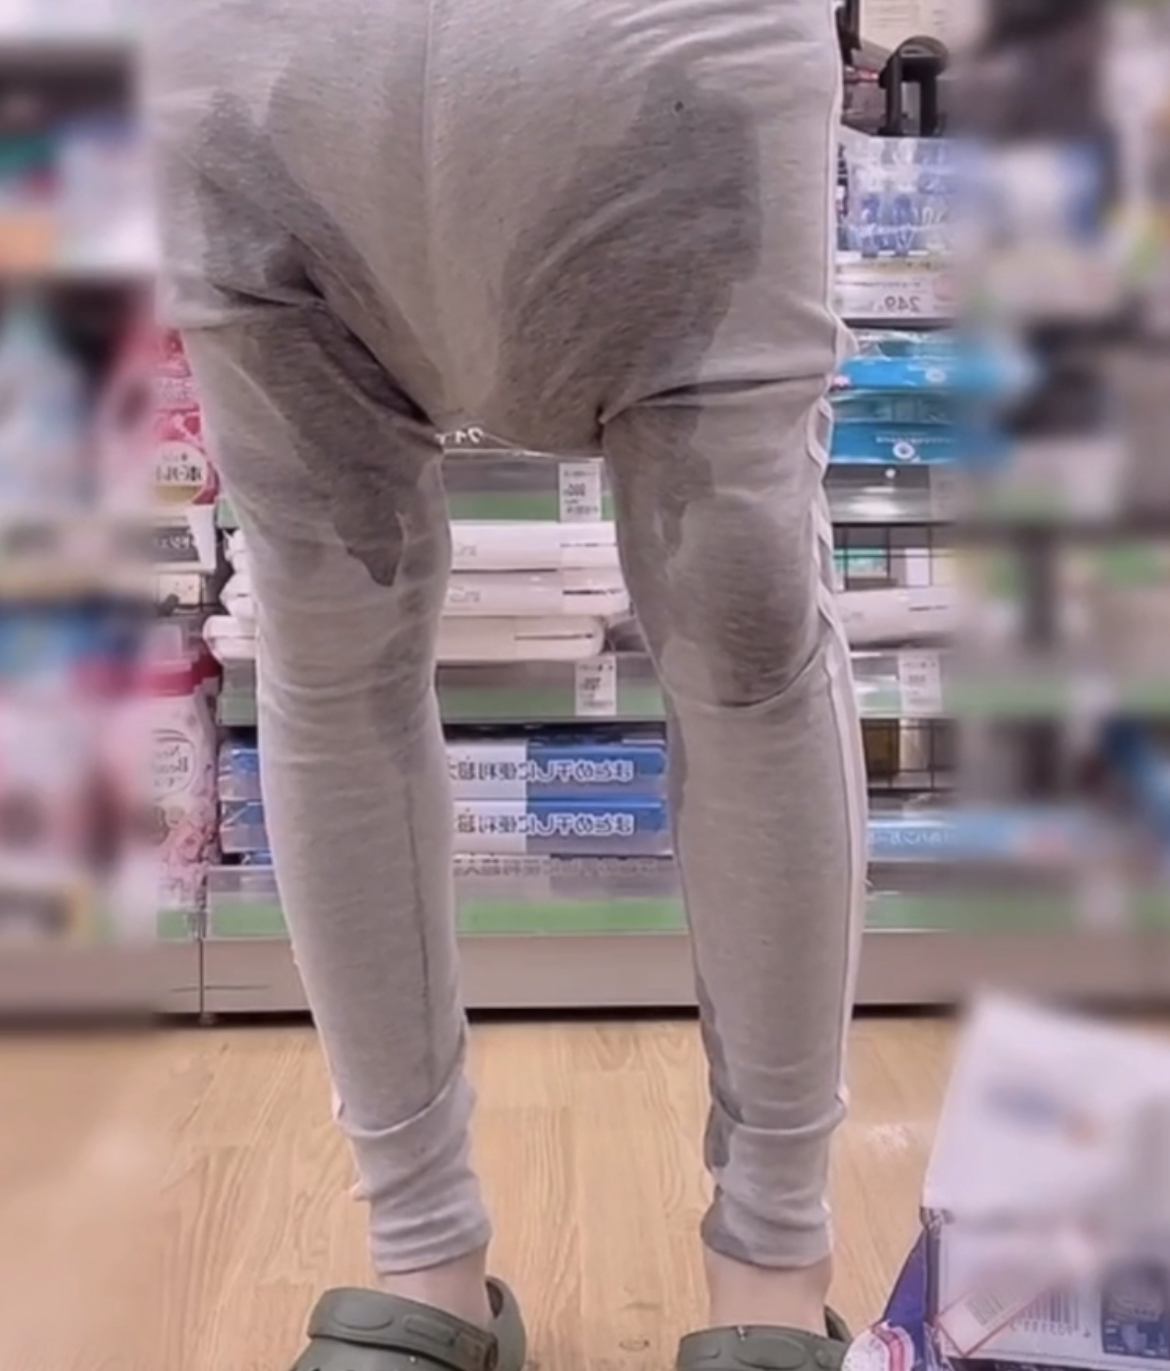 Big soaked diaper leak in public